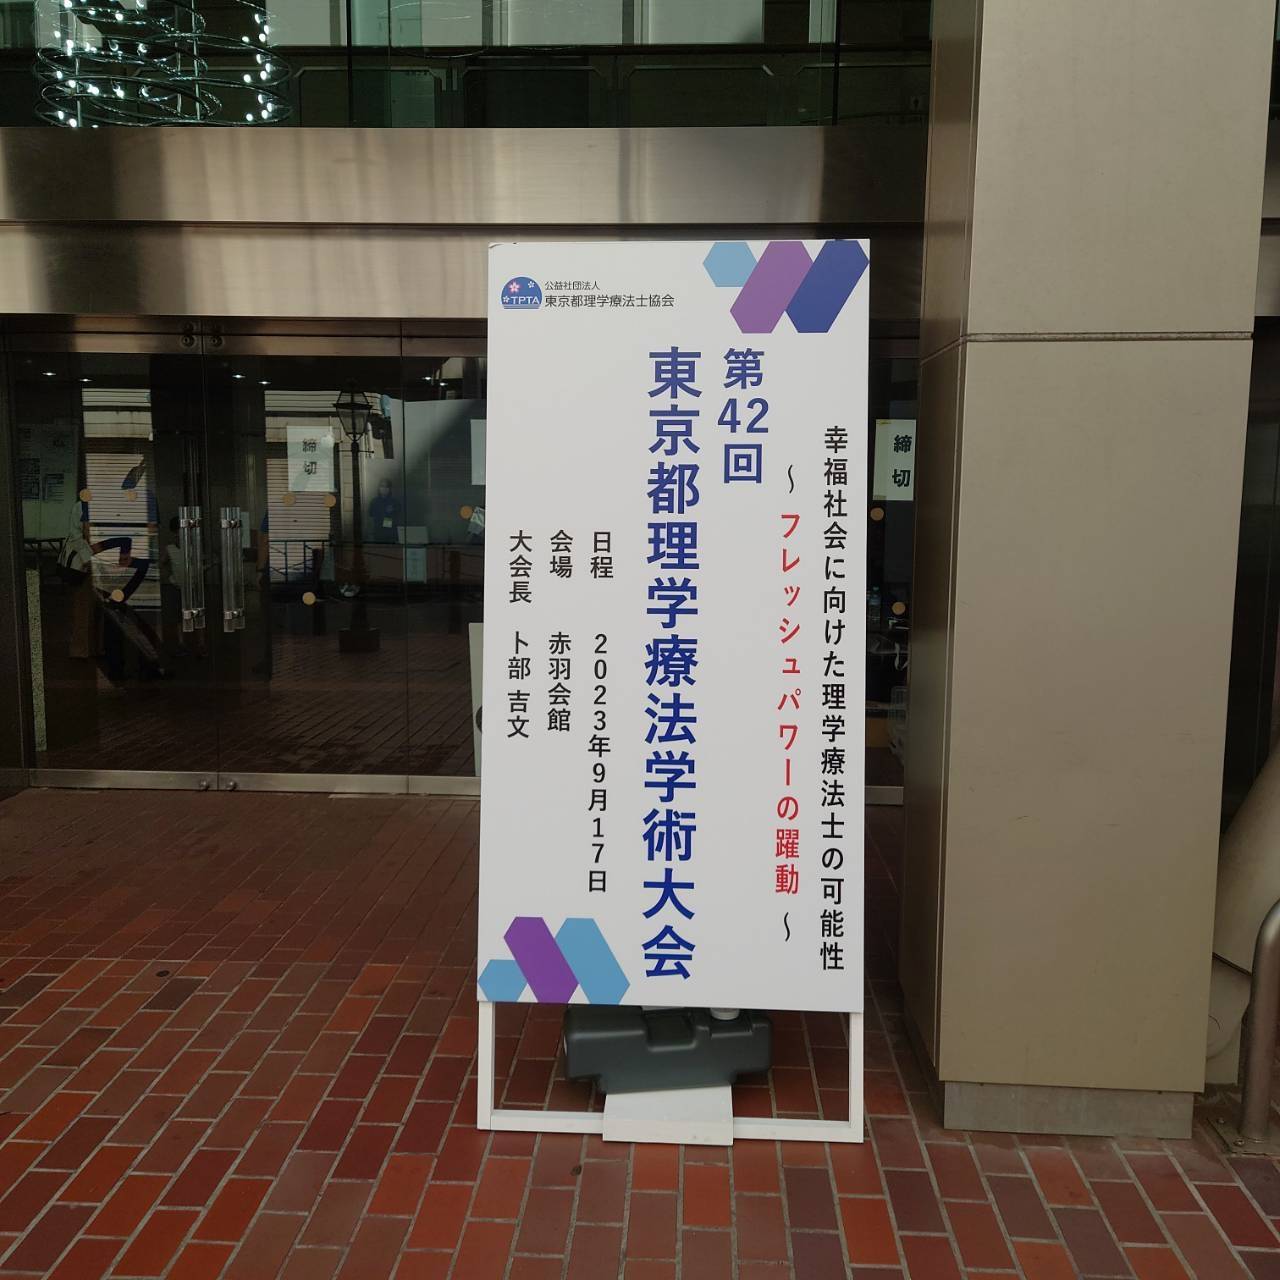 【訪問看護】東京都理学療法学術大会に参加してきました